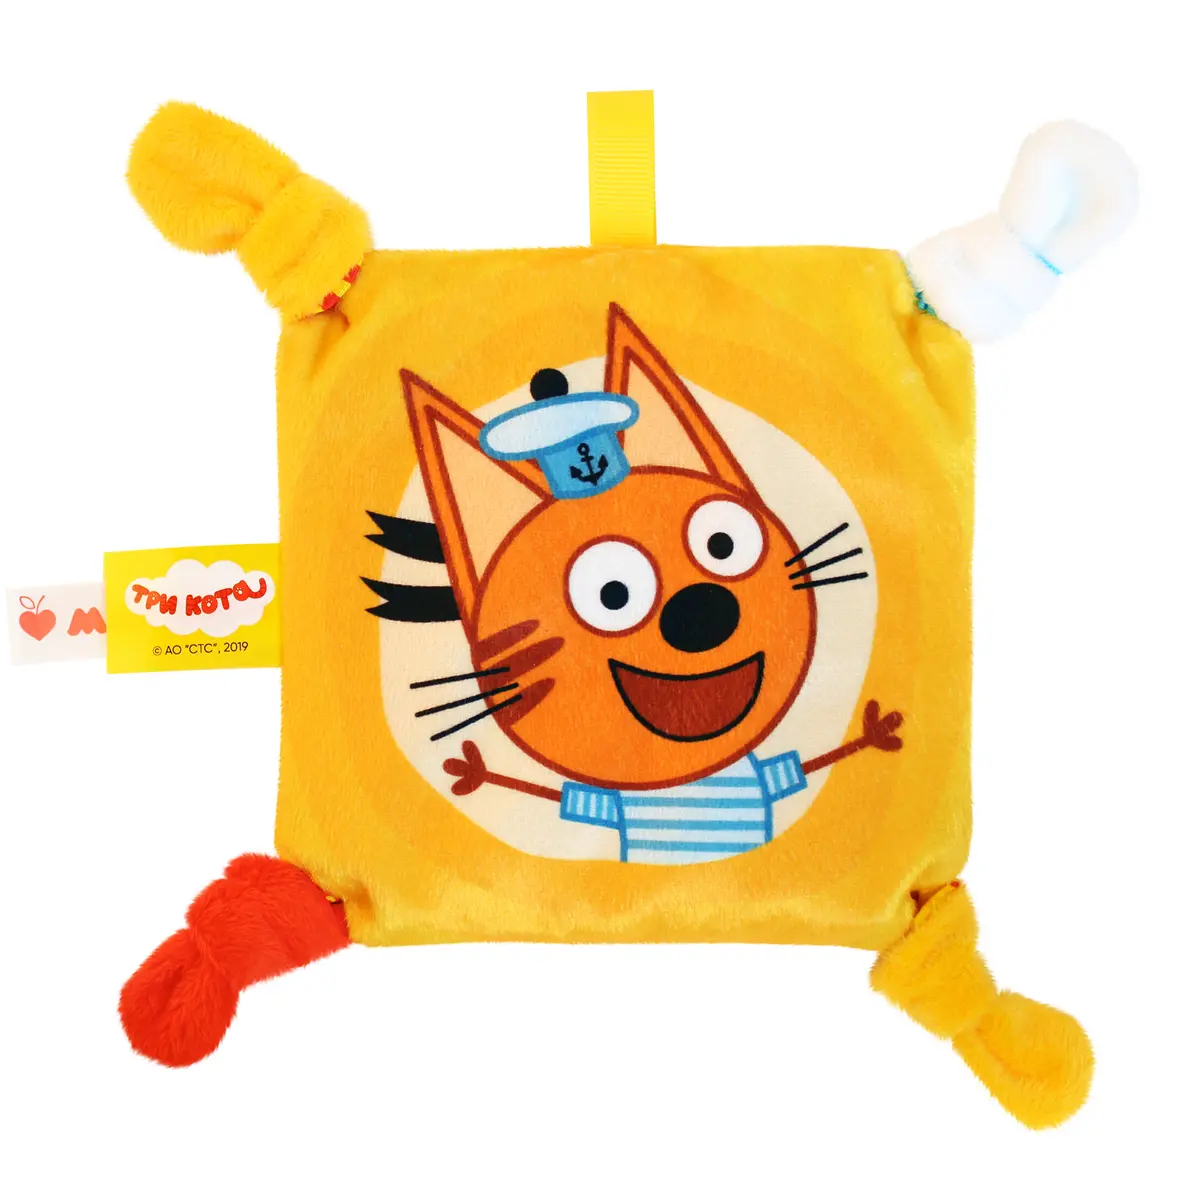 Alilo игрушка Три Кота - Коржик интерактивная музыкальная: цена и описание | Интернет-магазин ОЛАНТ